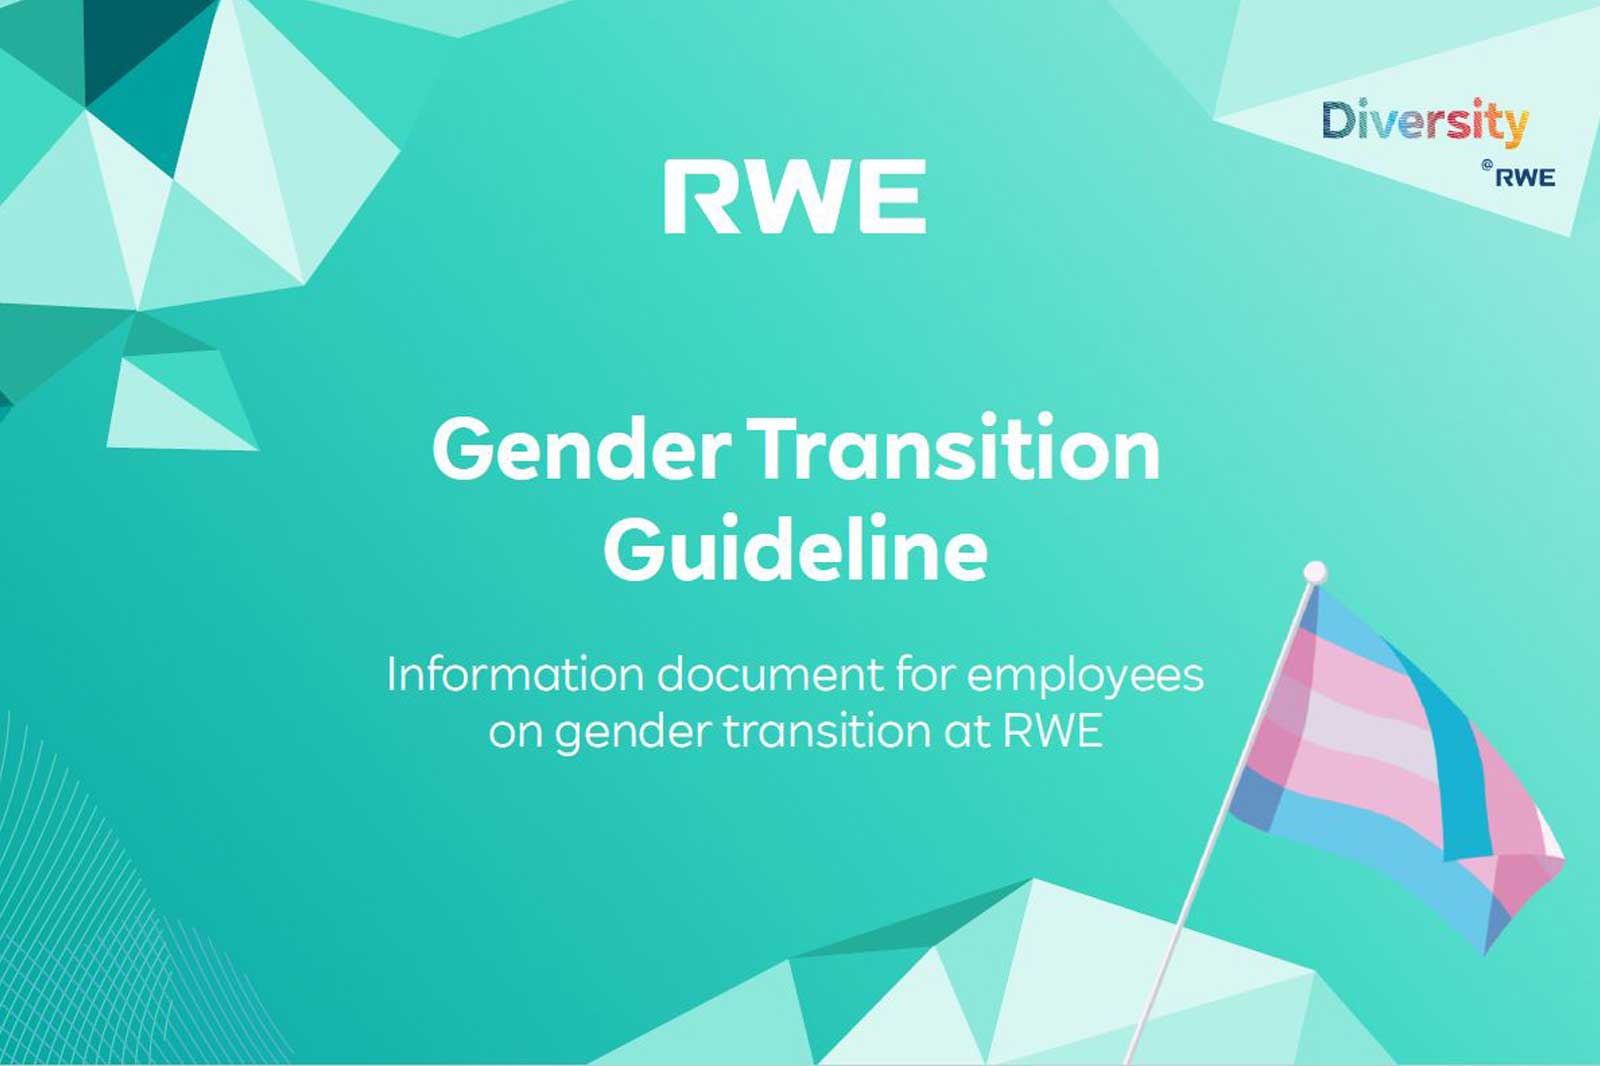 Gender-Transition Guideline